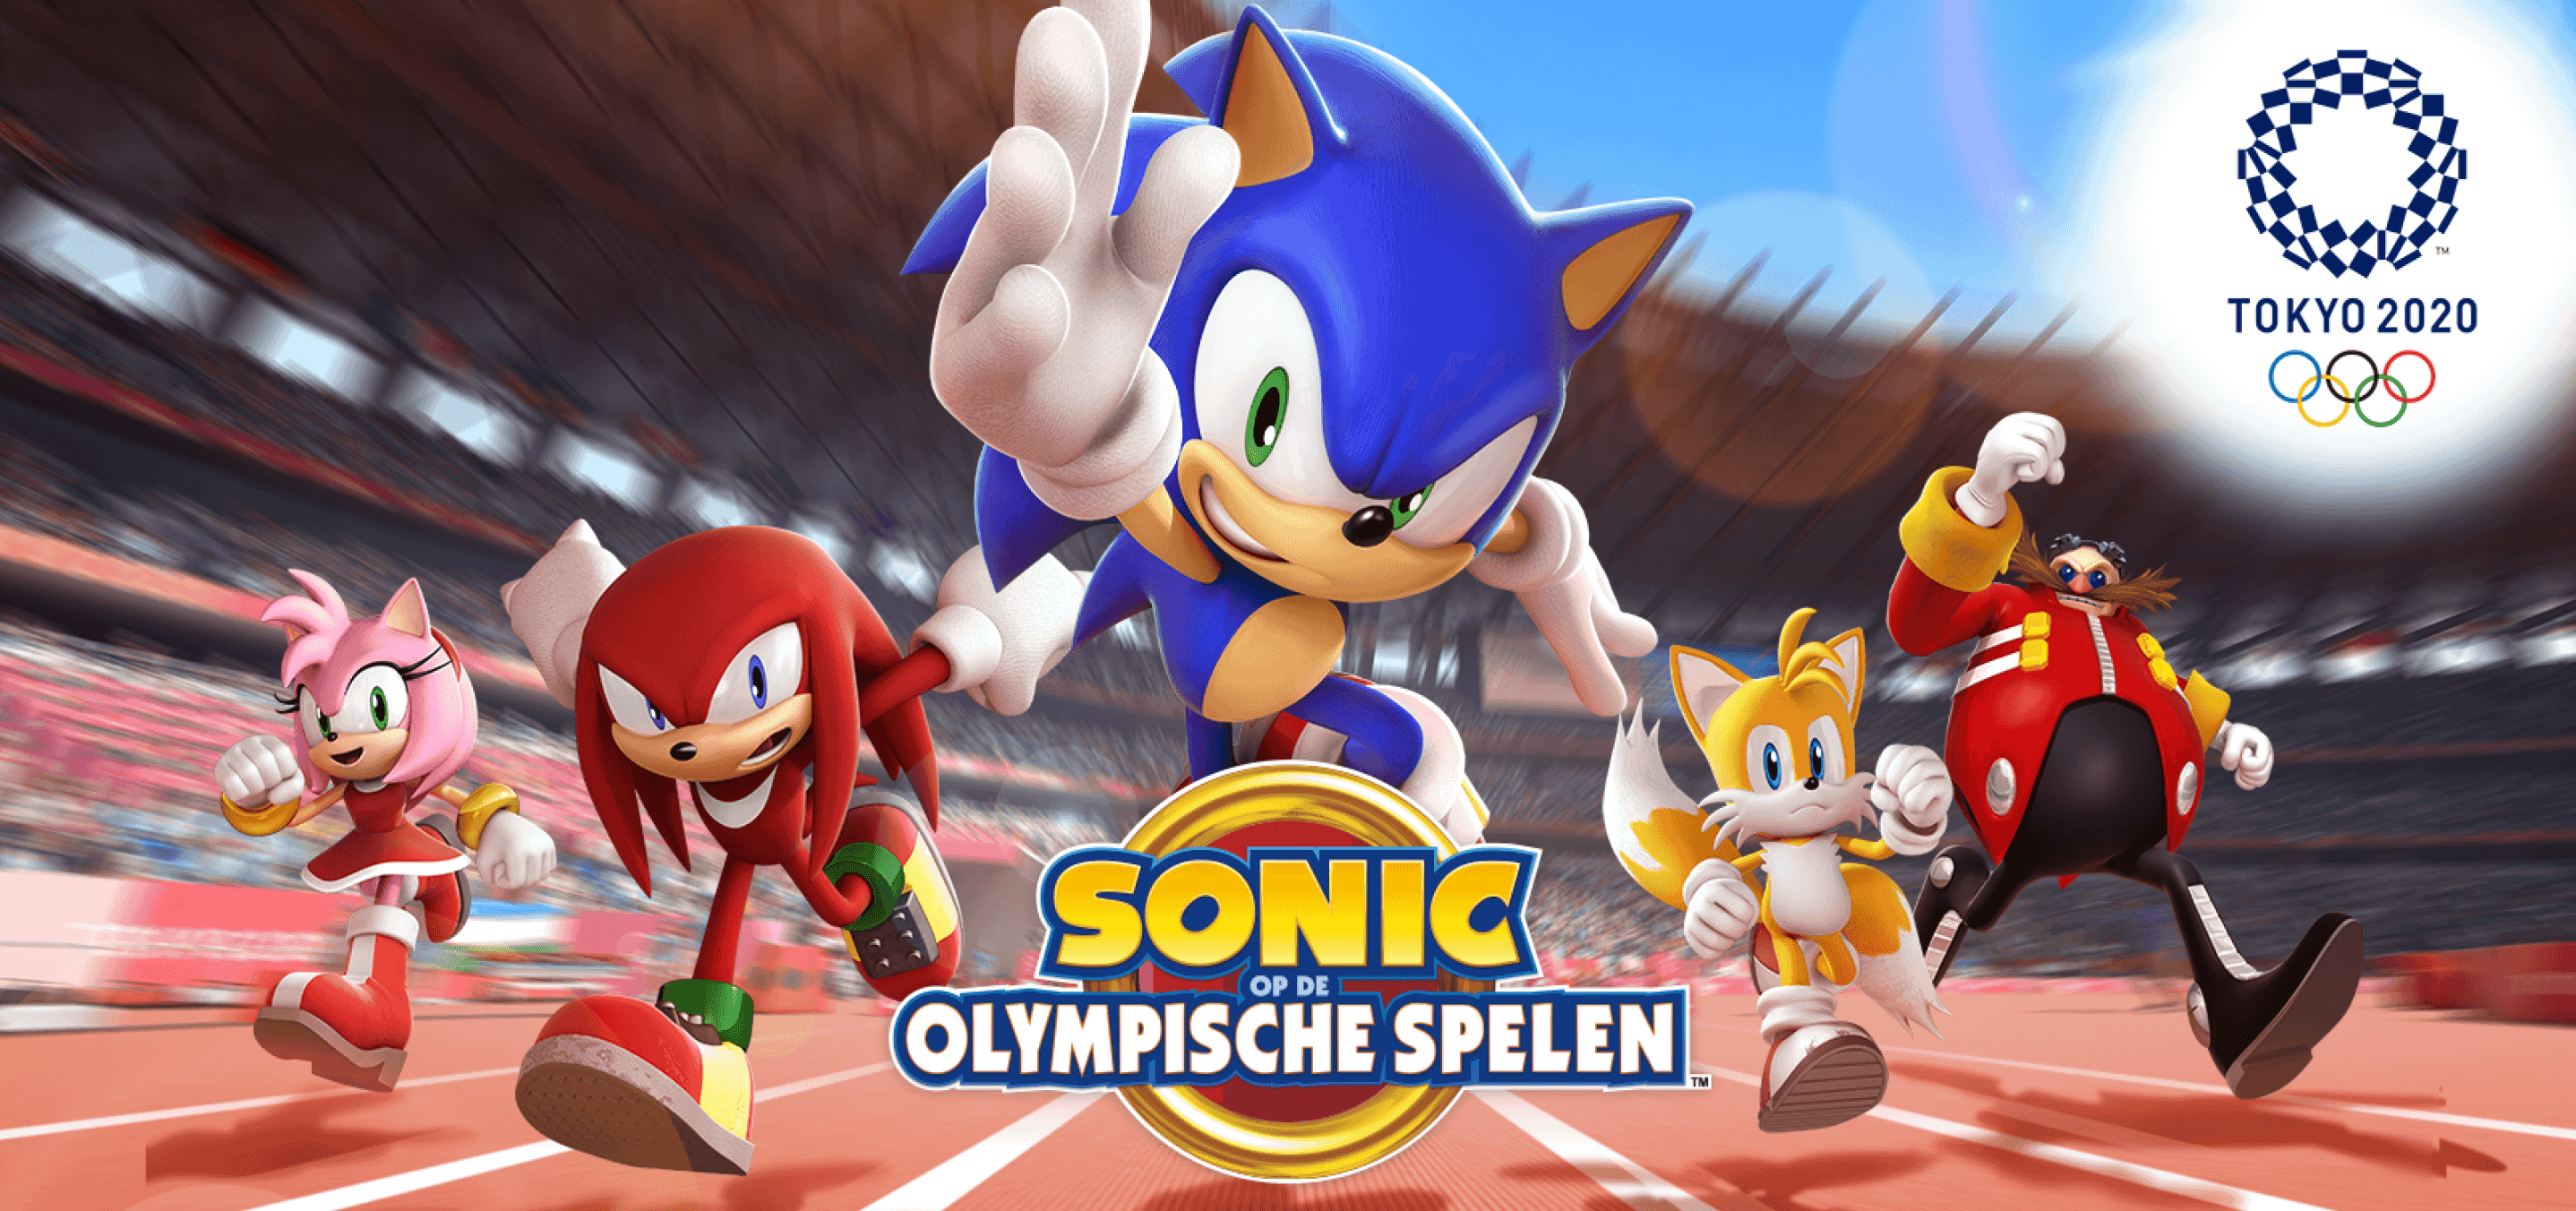 Sonic op de Spelen: Tokio 2020™